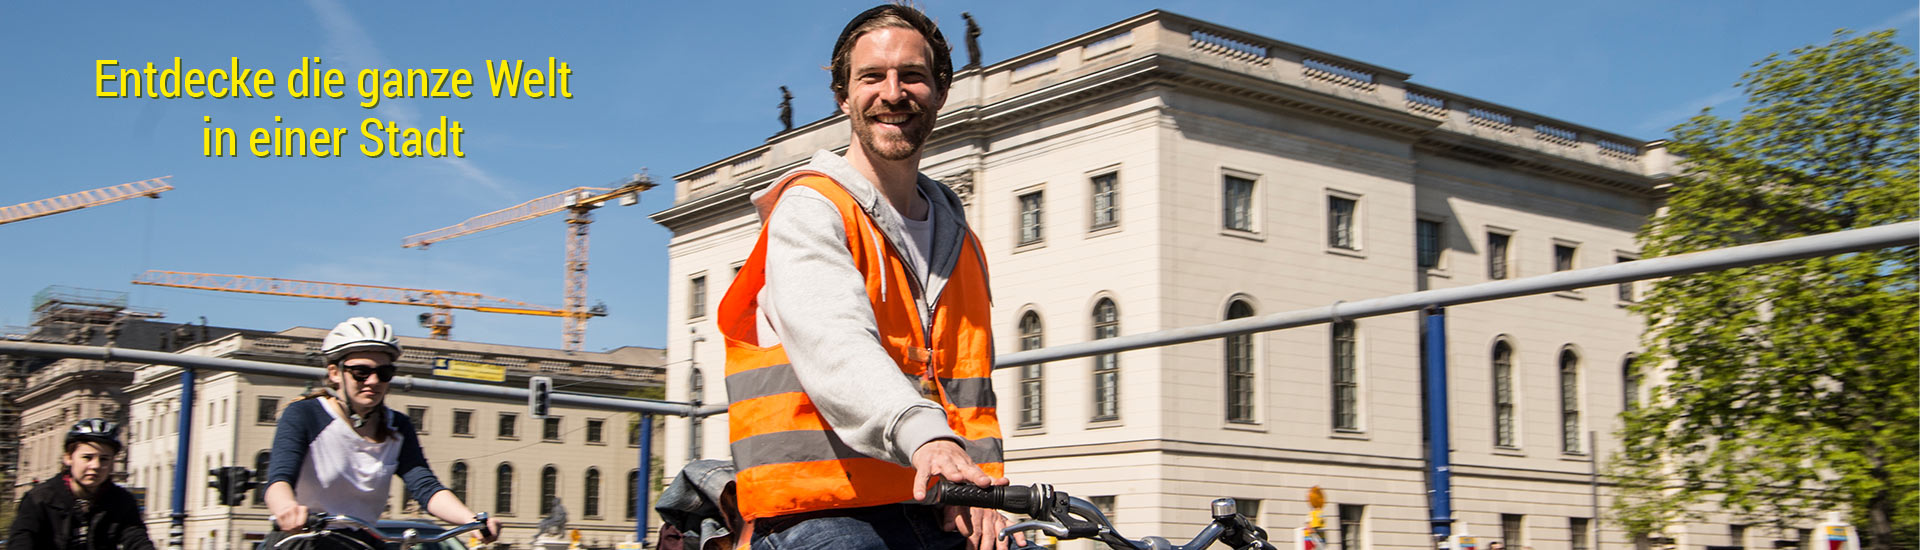 Entdecke die ganze Welt... in einer Stadt. Mit Bike Events Berlin